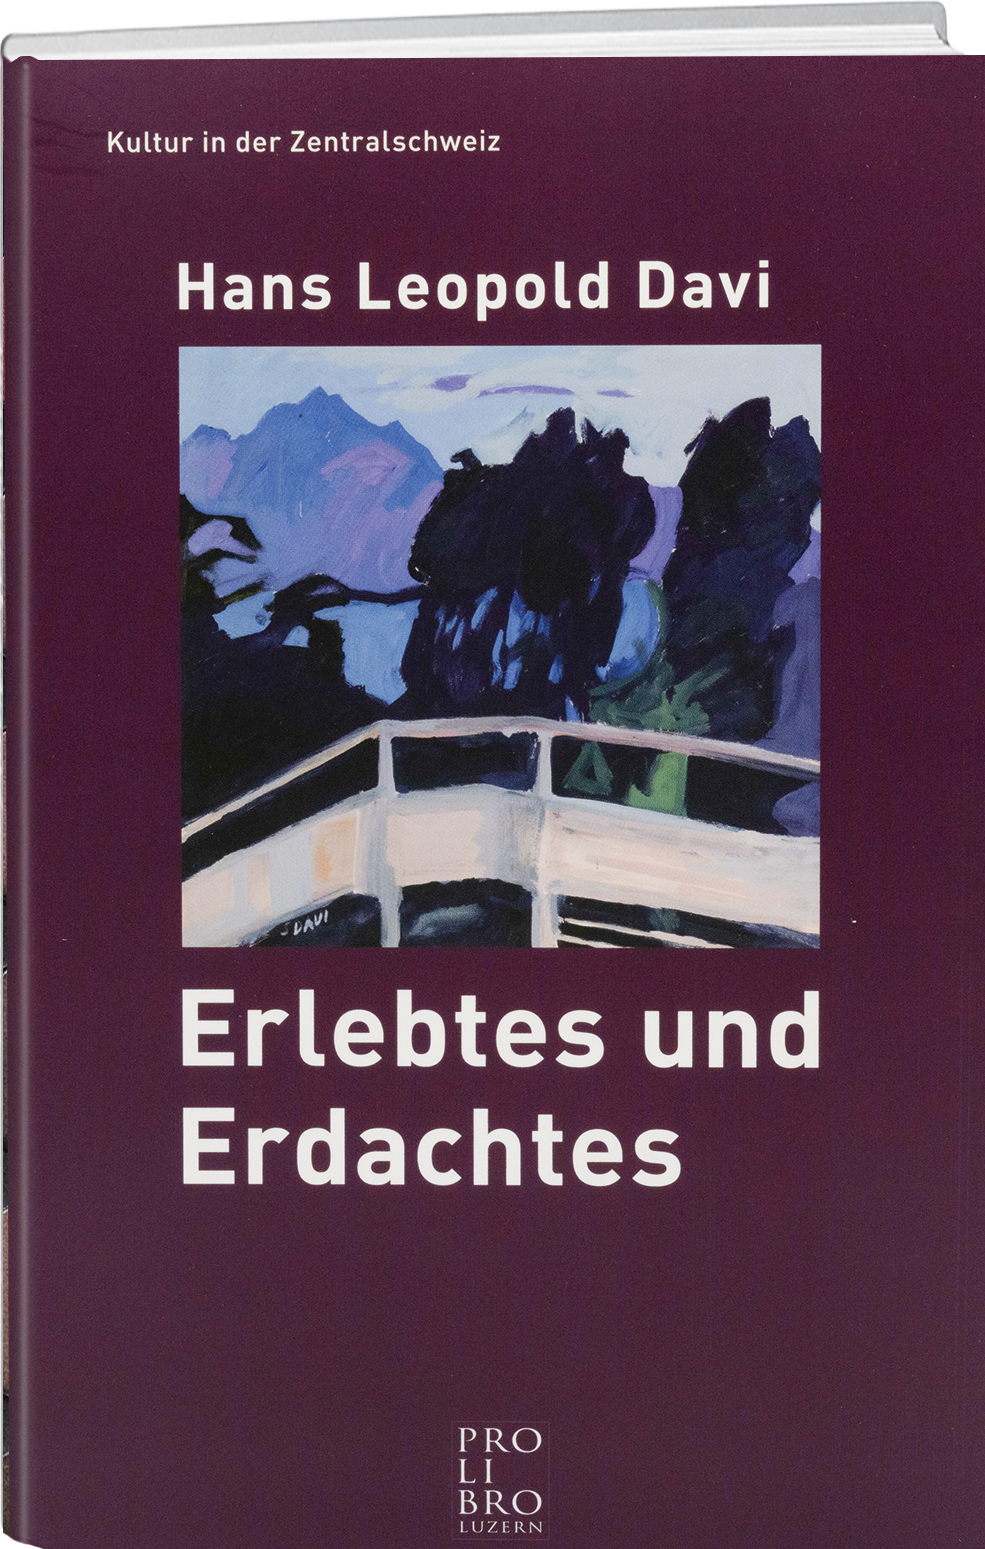 Hans Leopold Davi: Erlebtes und Erdachtes - prolibro.ch